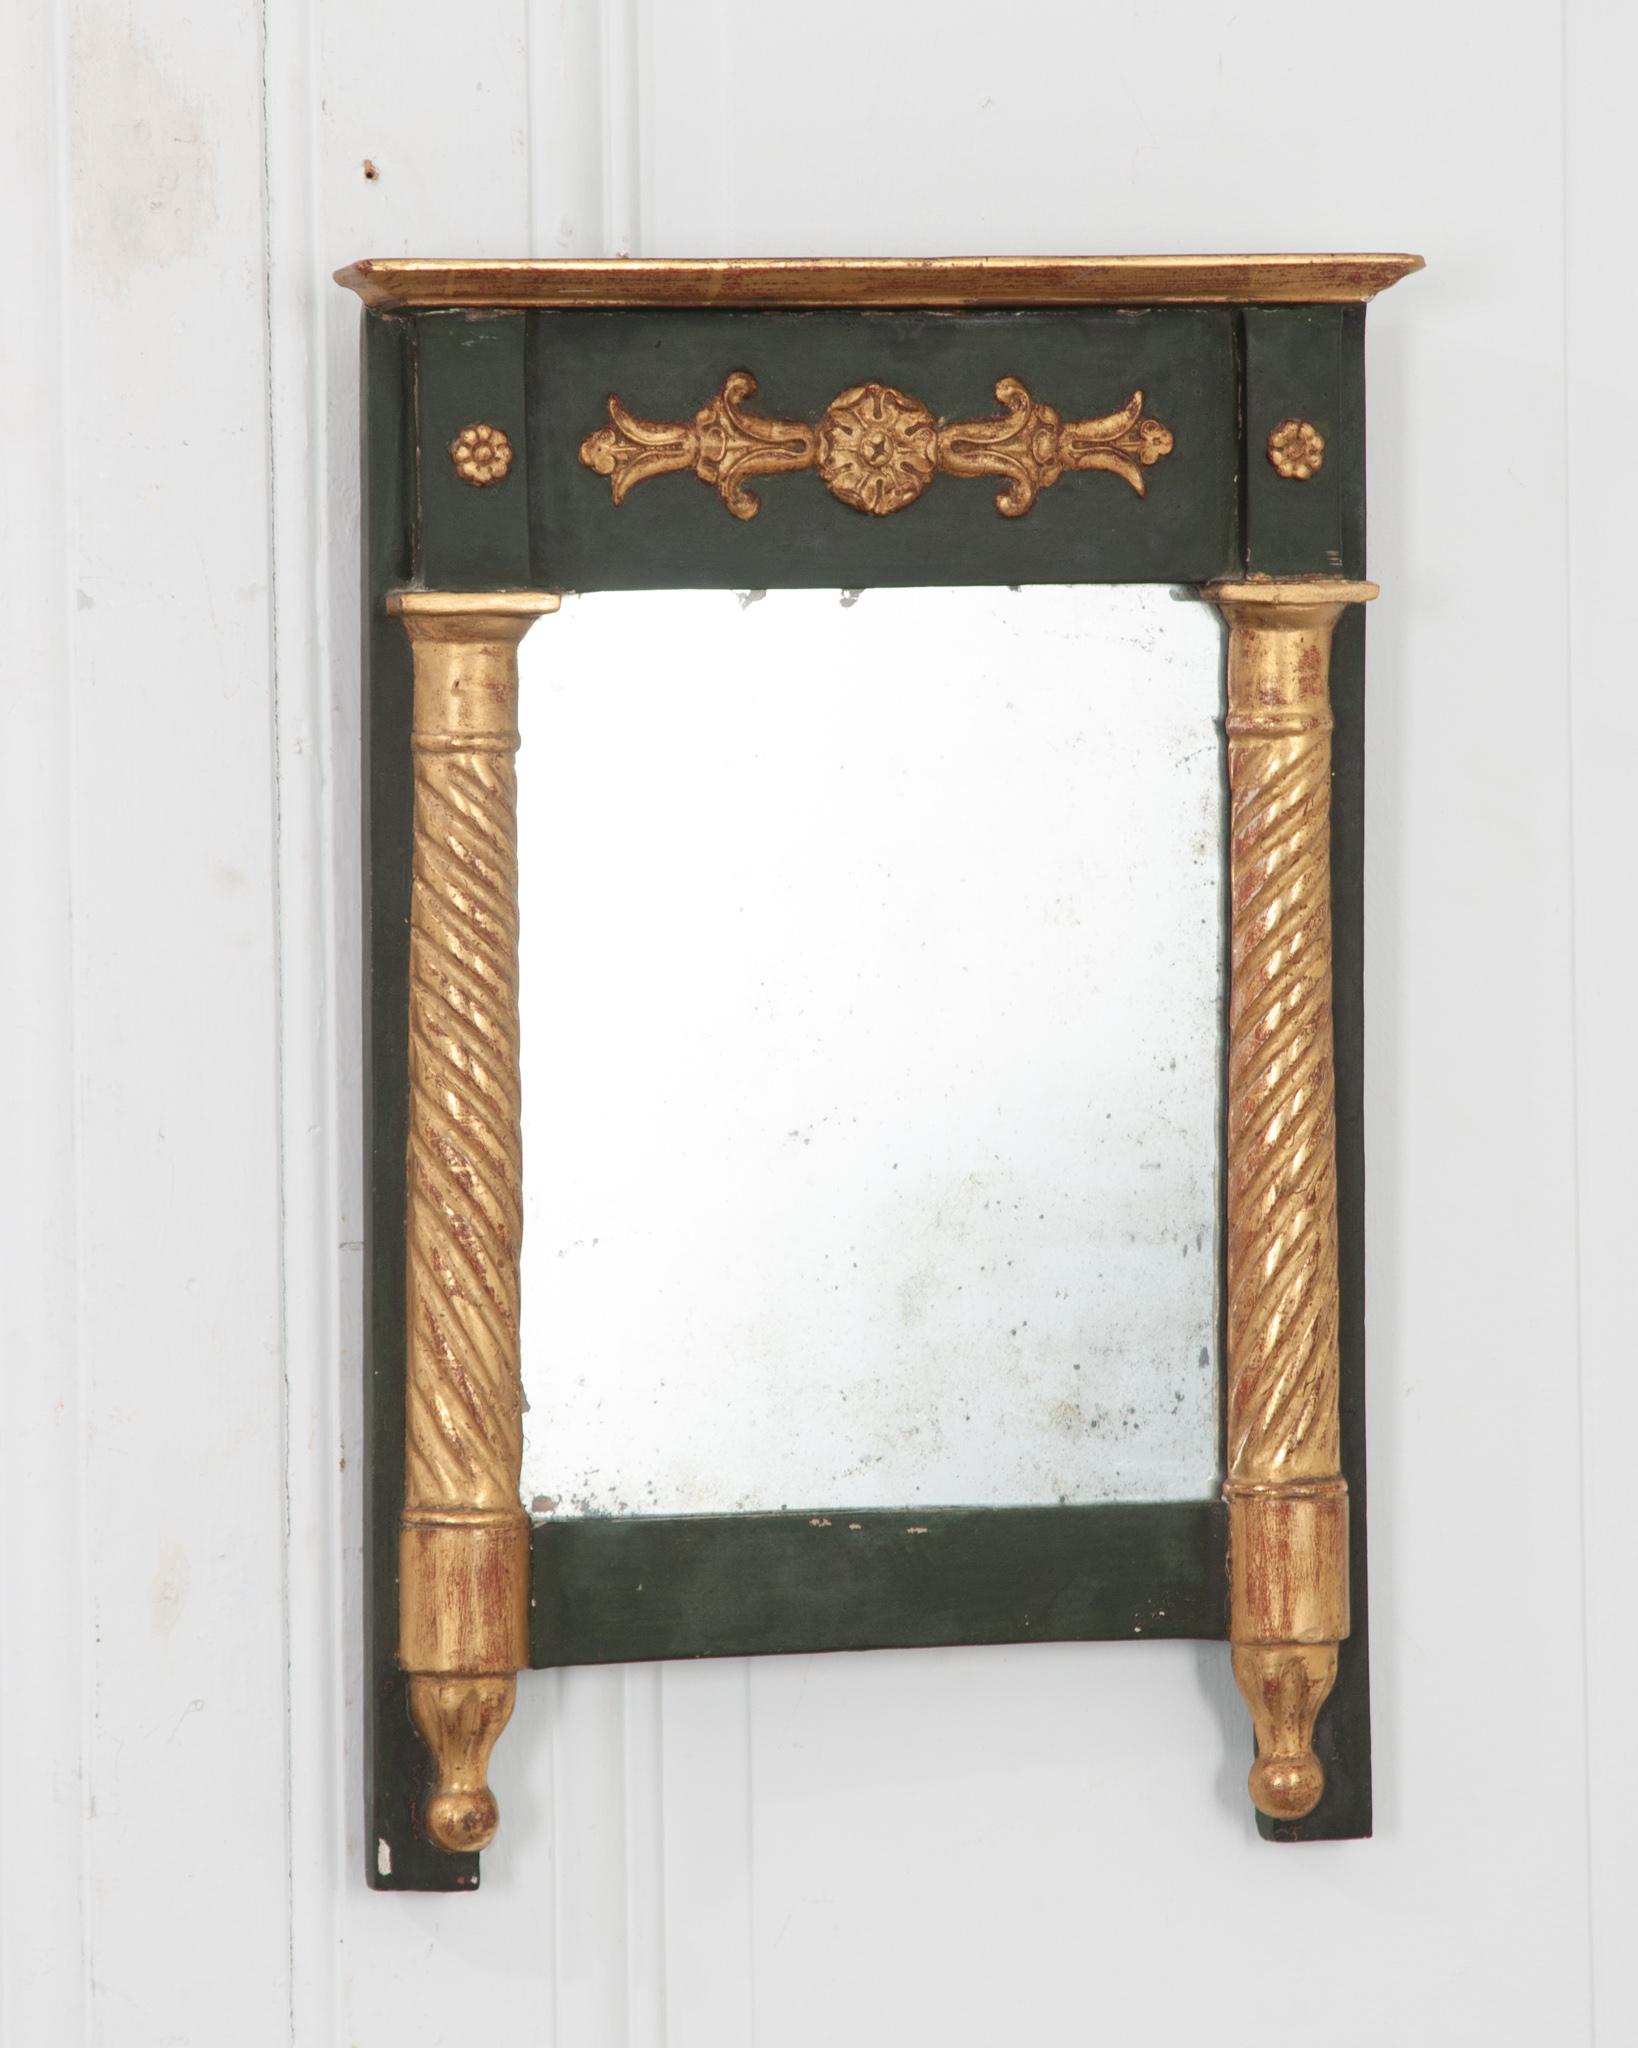 Ce petit trumeau d'époque Empire a été fabriqué à la main en France vers 1830. Peint d'un vert profond et accentué de rosettes dorées et de formes de colonnes torsadées flanquant la plaque de miroir originale. Quelques rousseurs sont visibles, sans